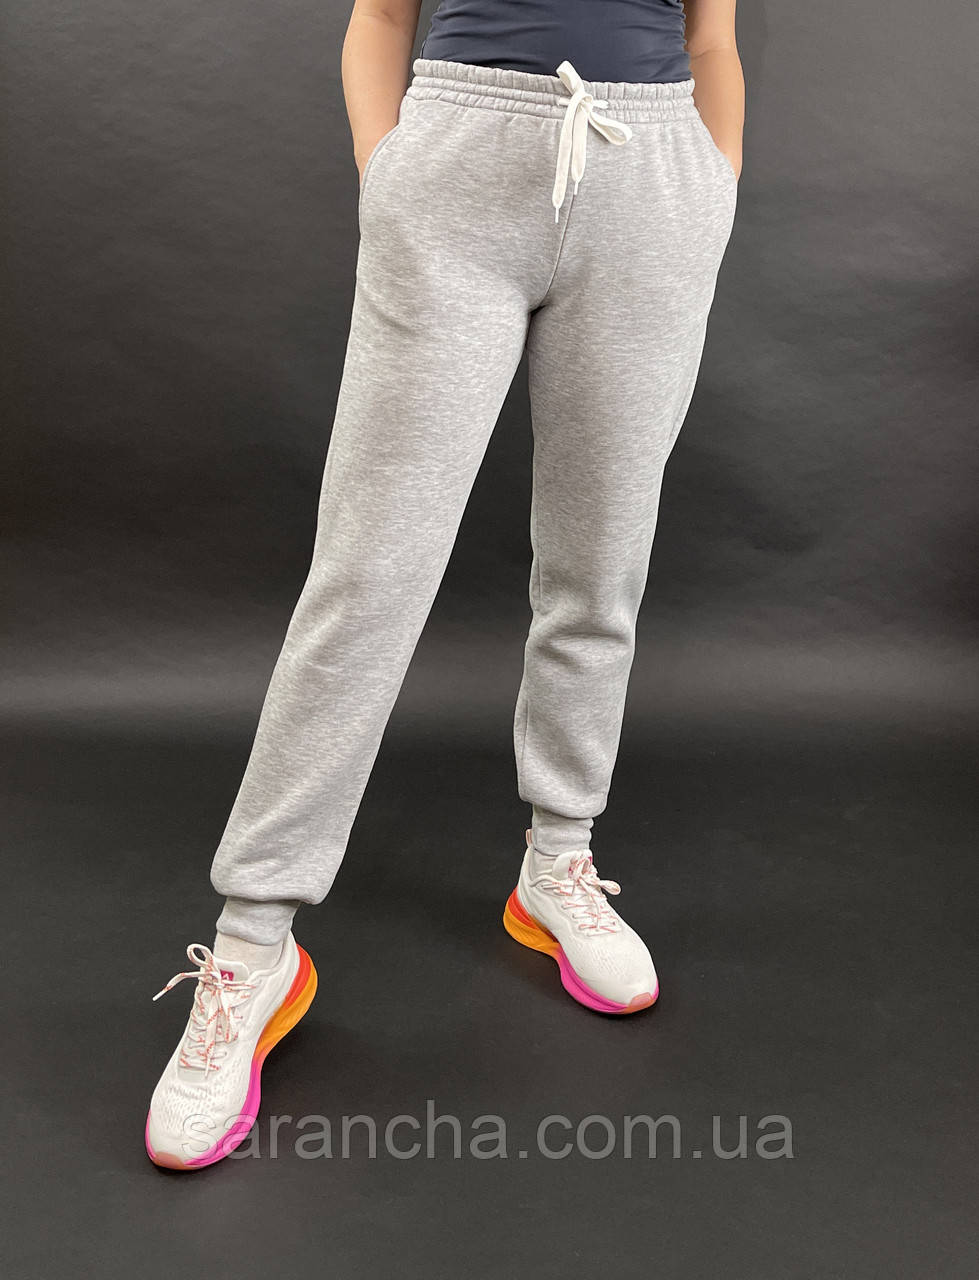 Утеплені жіночі спортивні штани великих розмірів на манжеті качкорсе світло-сіра трехнітка на флісі